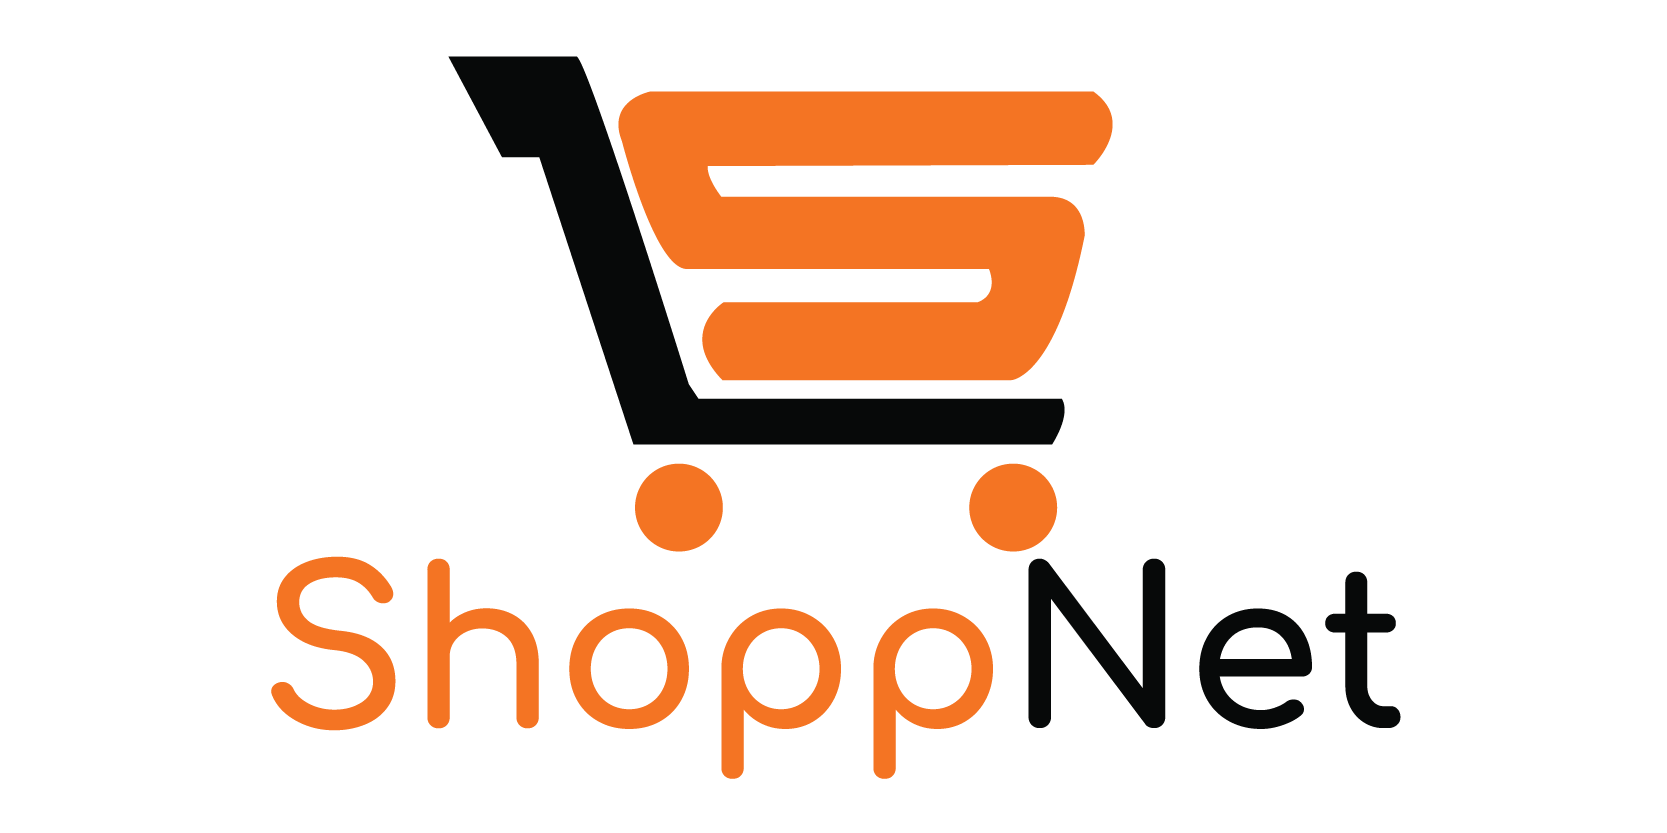 ShoppNet